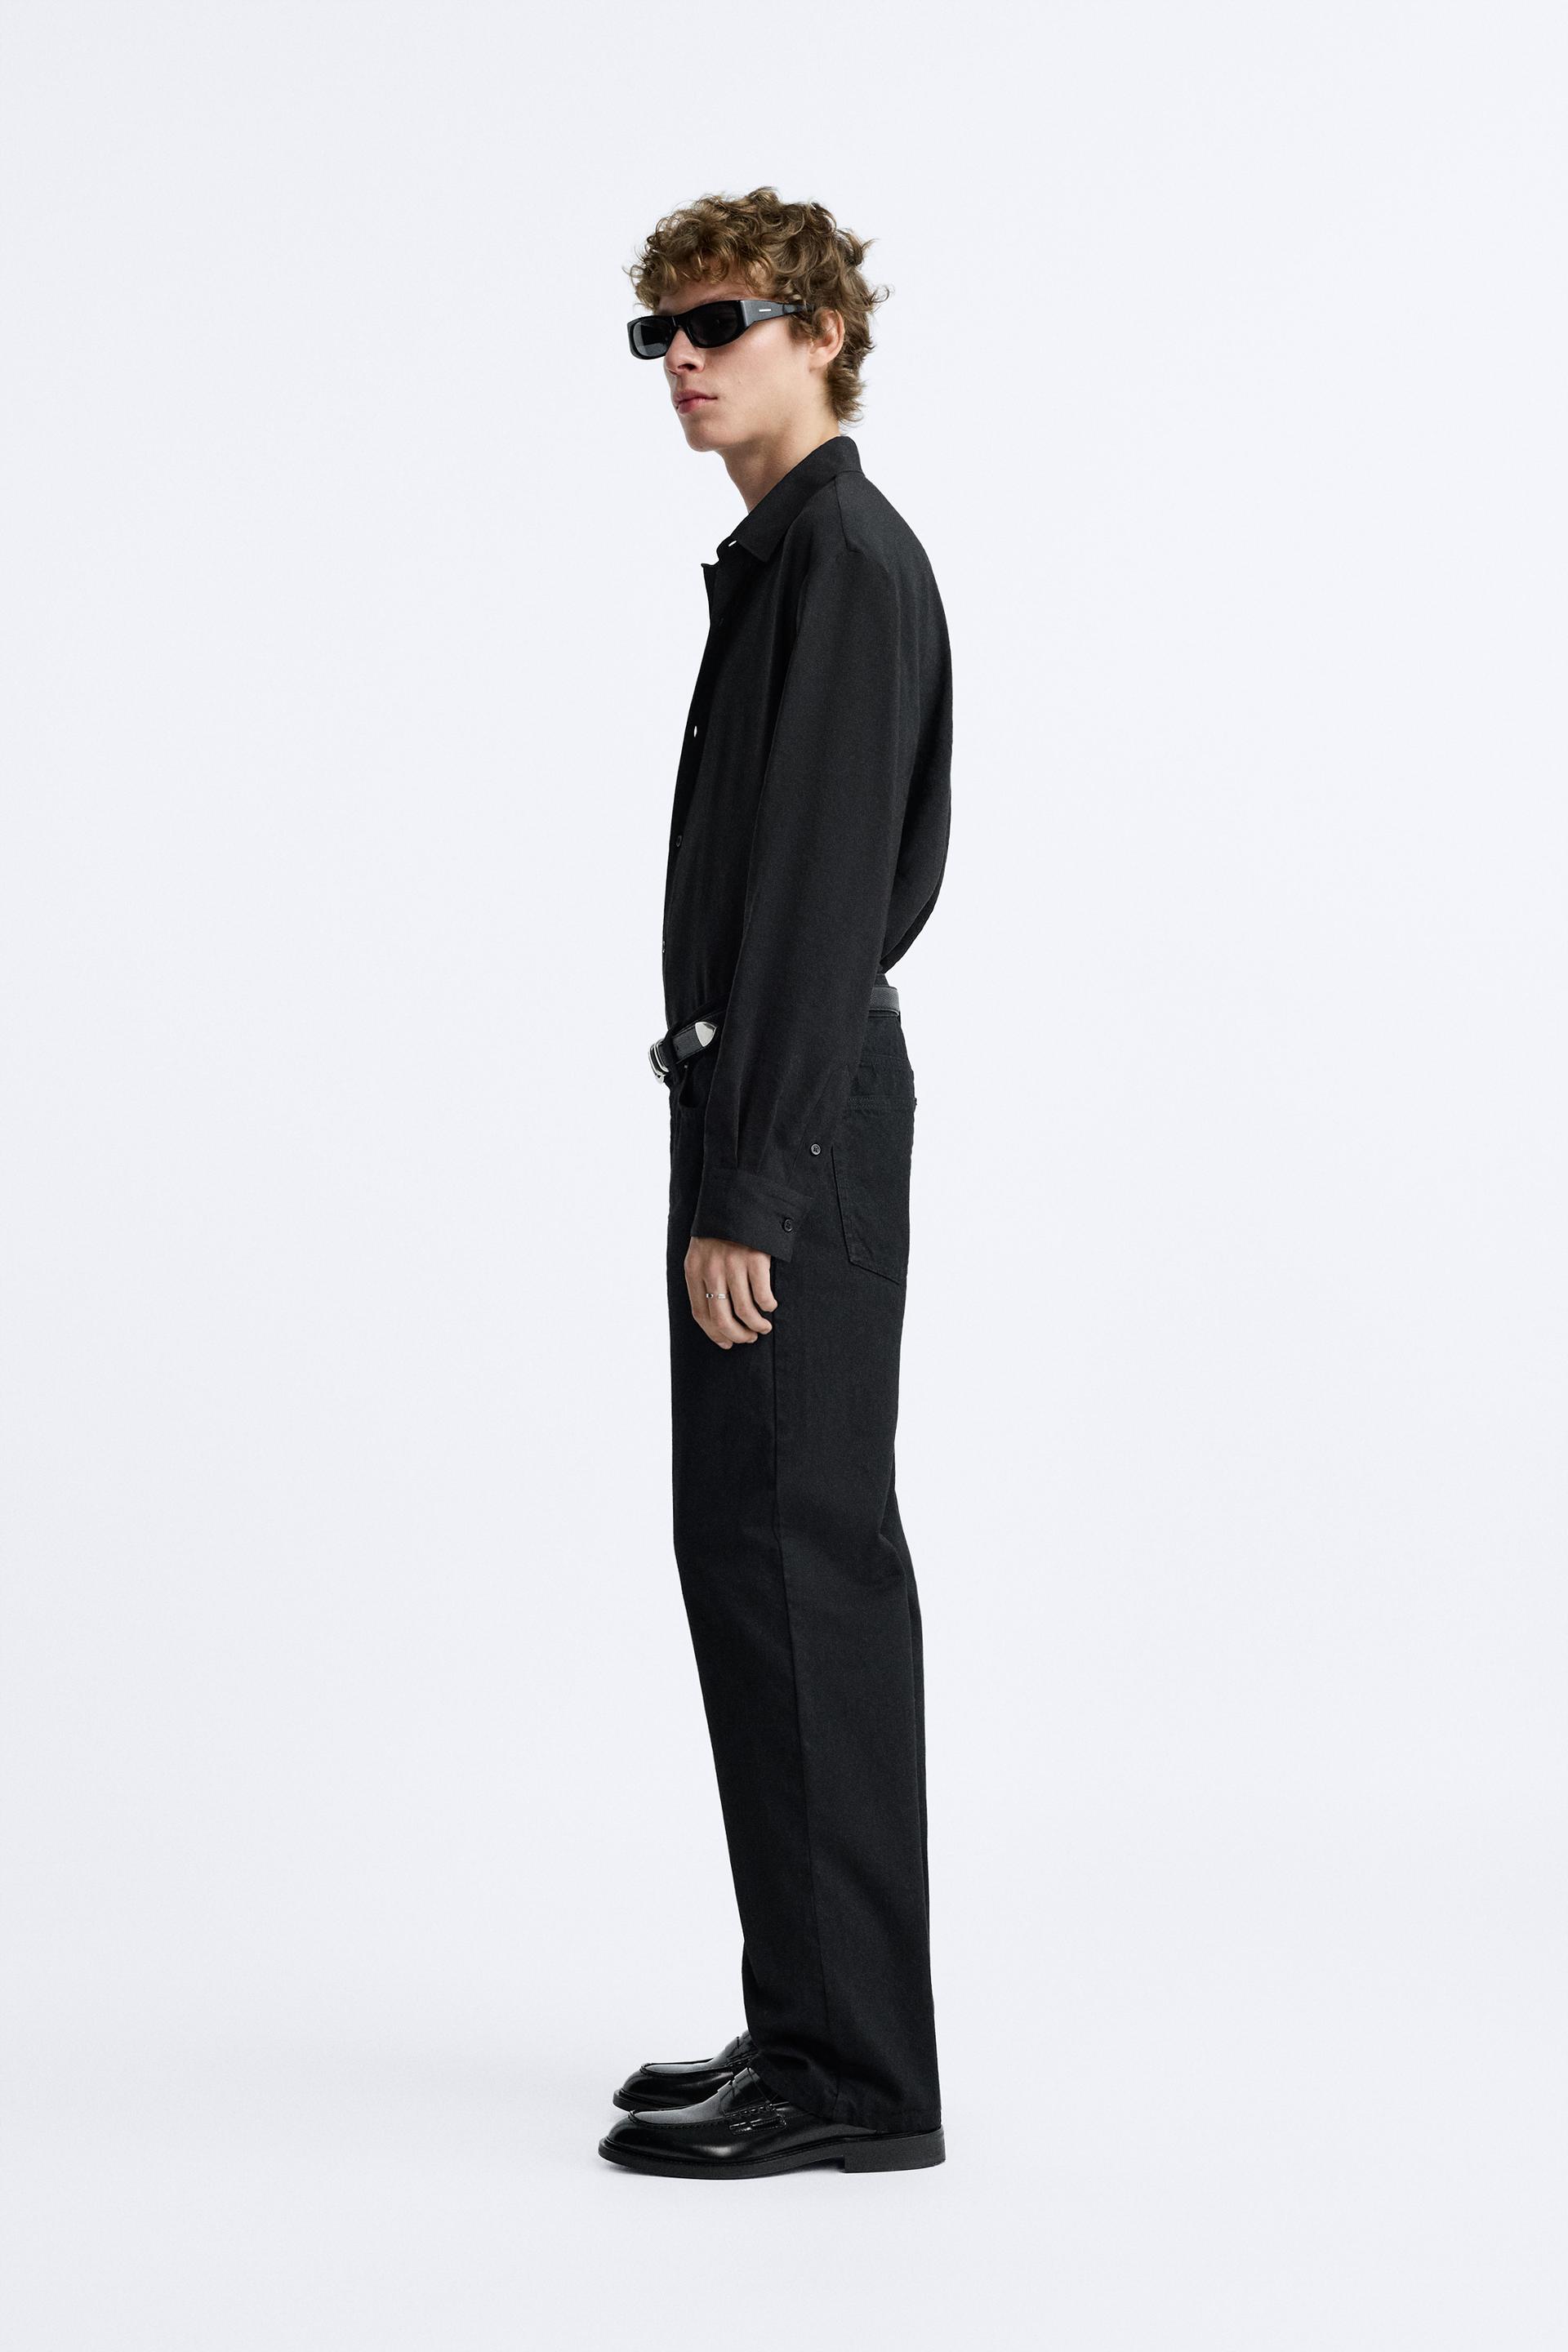 Zara Pants Adult 34 Dres Black Bottom Slack Slim Work Business Formal  Office 